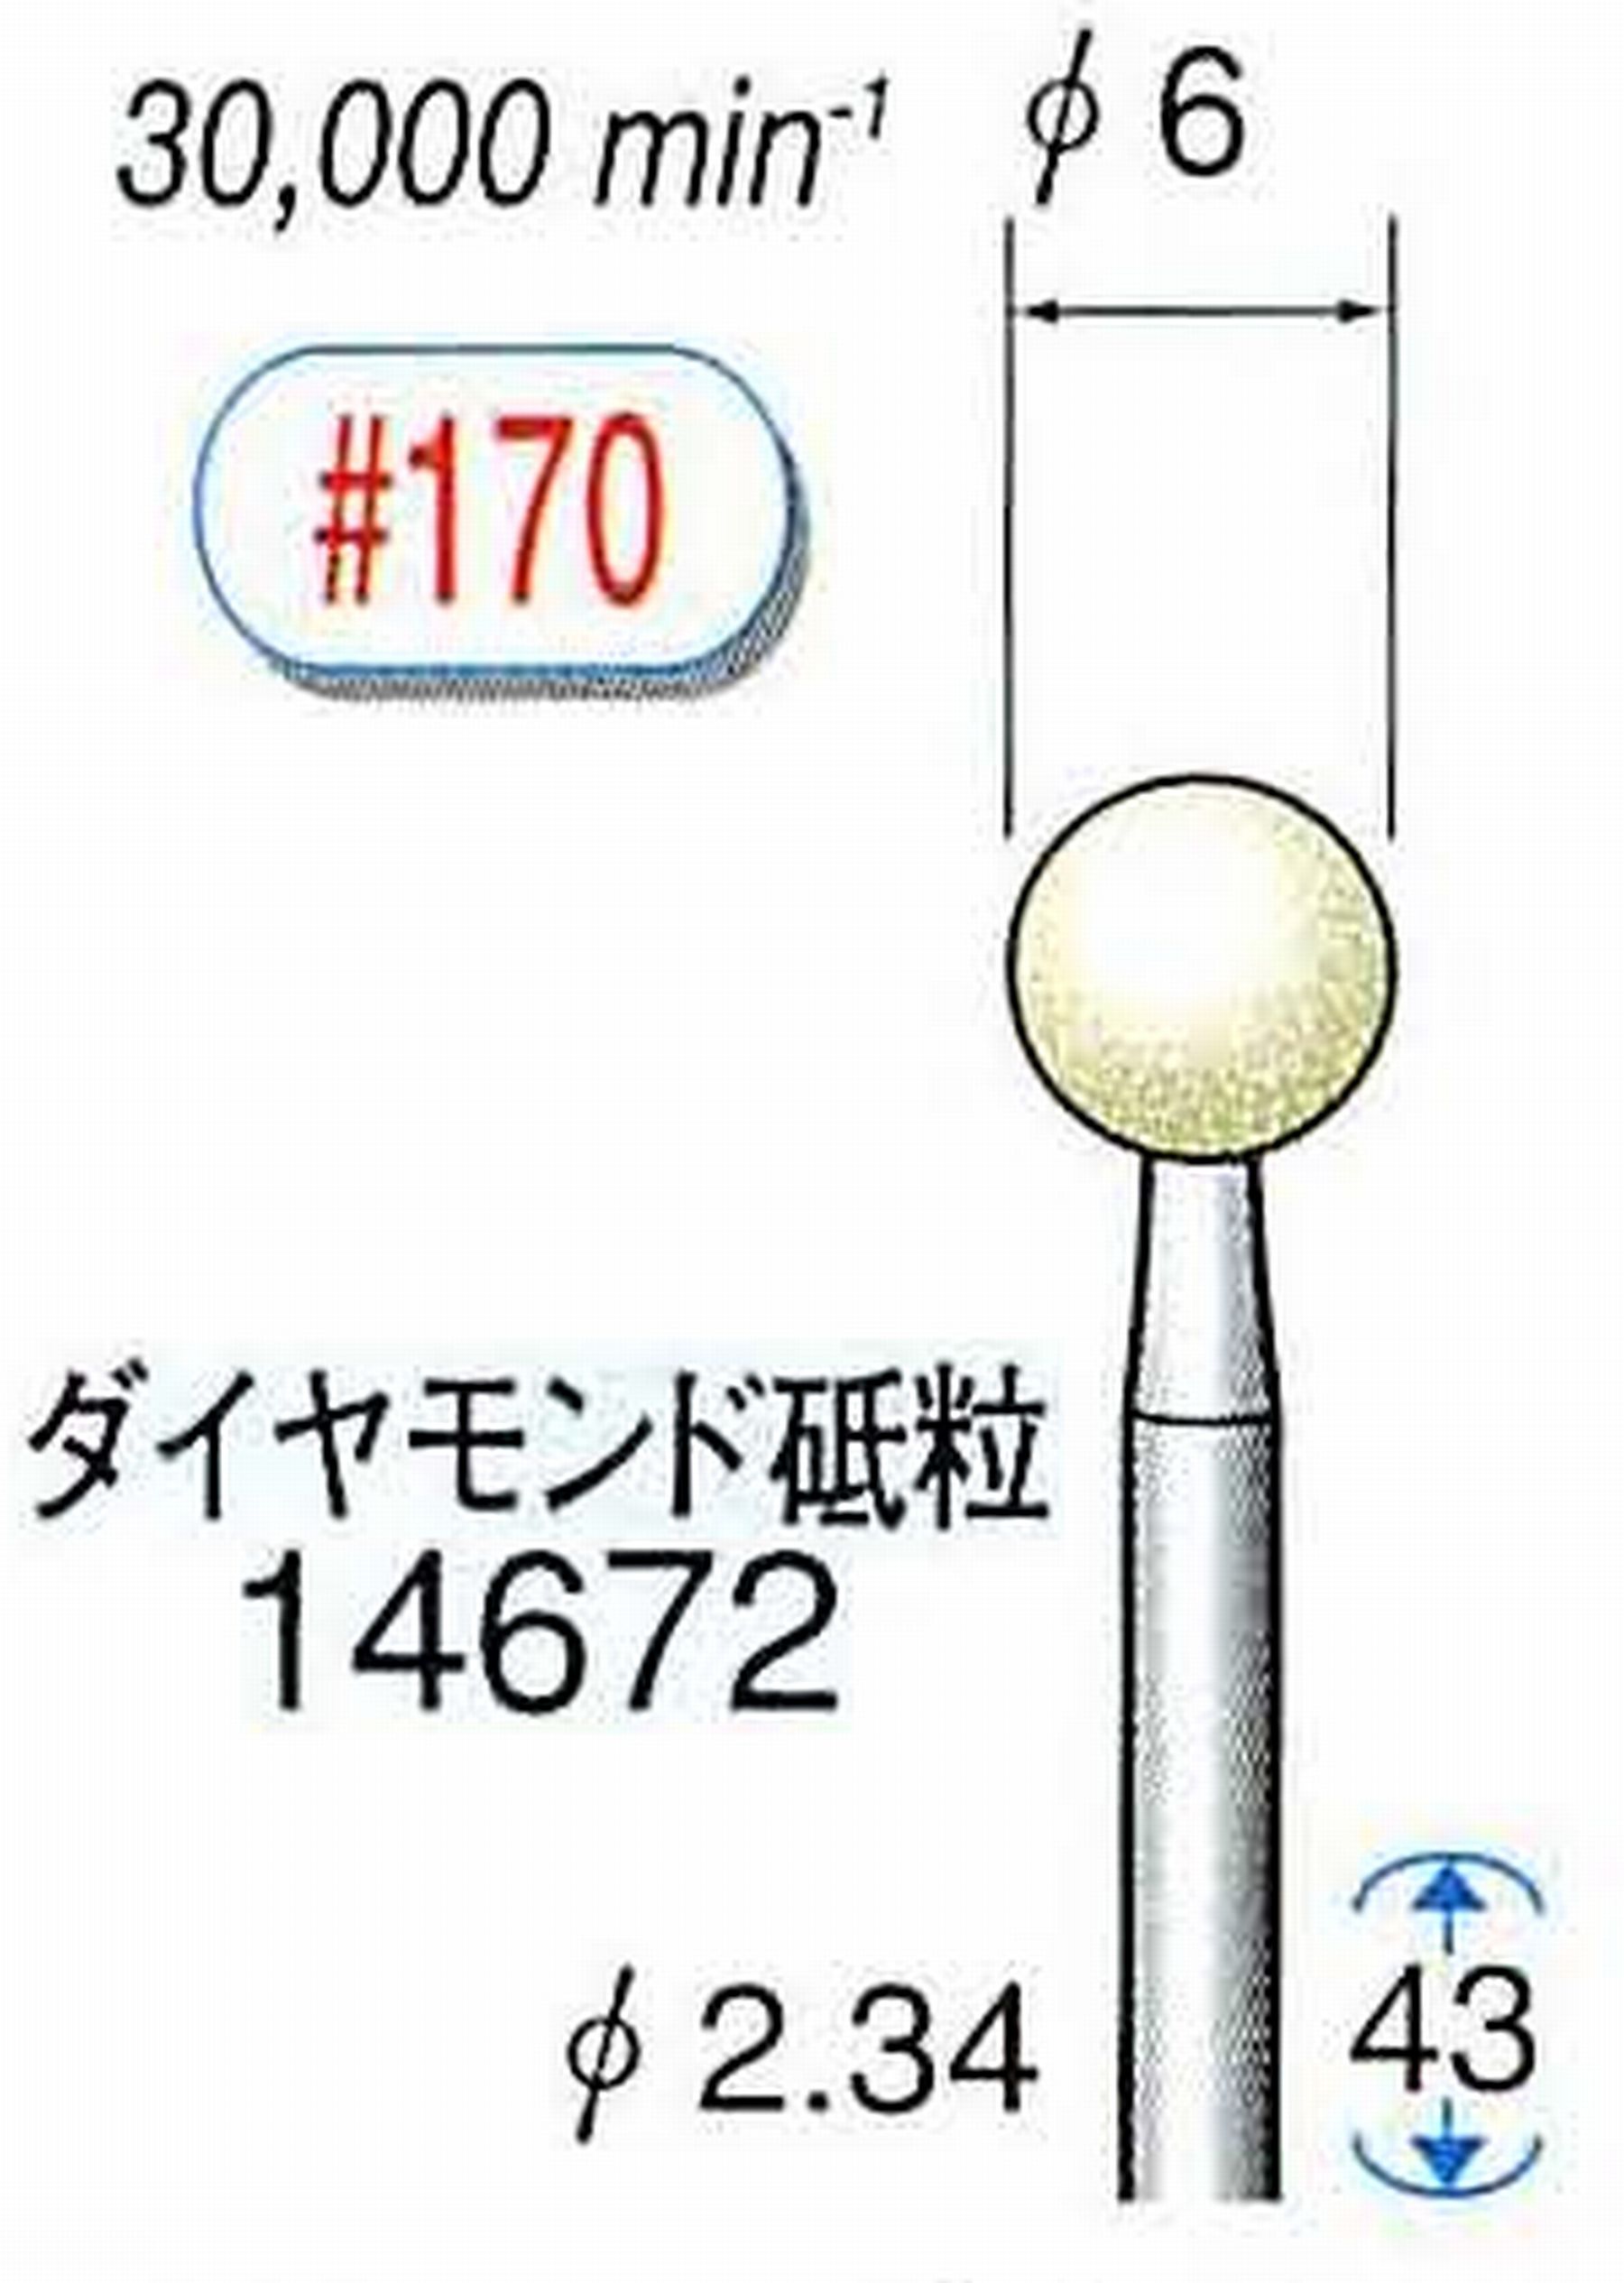 ナカニシ/NAKANISHI セラミックダイヤモンド砥石 ダイヤモンド砥粒 軸径(シャンク)φ2.34mm 14672